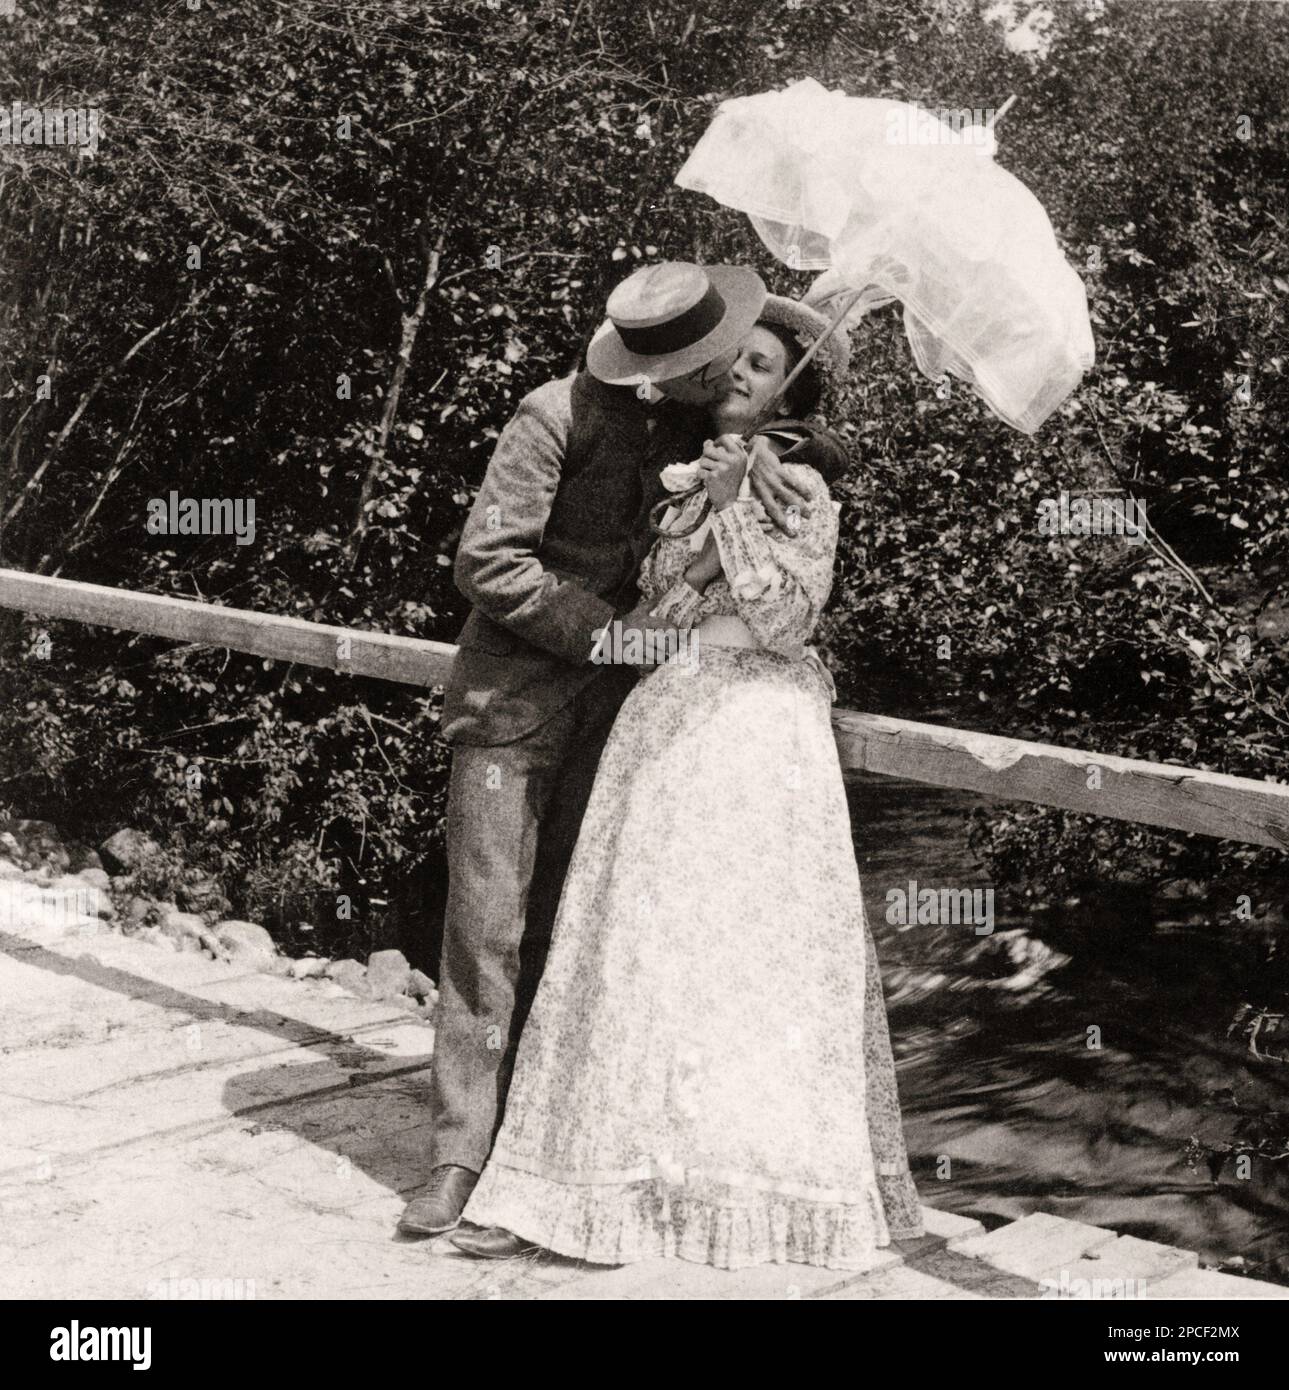 1897 , USA  : ' The Summer girl and her sweetheart ' . Man and woman kissing under umbrella on bridge . Photo by American Stereoscopic Co, New York    - KISS - BACIO -  KISSING - COURTSHIP - CORTEGGIAMENTO - LOVE - AMORE - LOVEERS - AMANTI - FIDANZATI - SAN VALENTINO - ST VALENTINE DAY - SENTIMENTAL - SENTIMENTALE - ROMANTIC - ROMANTICO -  FOTO STORICHE - HISTORY PHOTOS  -    - OTTOCENTO - 800's - '800 - FASHION - MODA - COPPIA - PORTRAIT - RITRATTO - pizzo - lace - BELLE EPOQUE  - ombrello - ombrellino da sole - pizzo - lace - hat - cappello - paglietta - ponte - ruscello -----  Archivio GBB Stock Photo